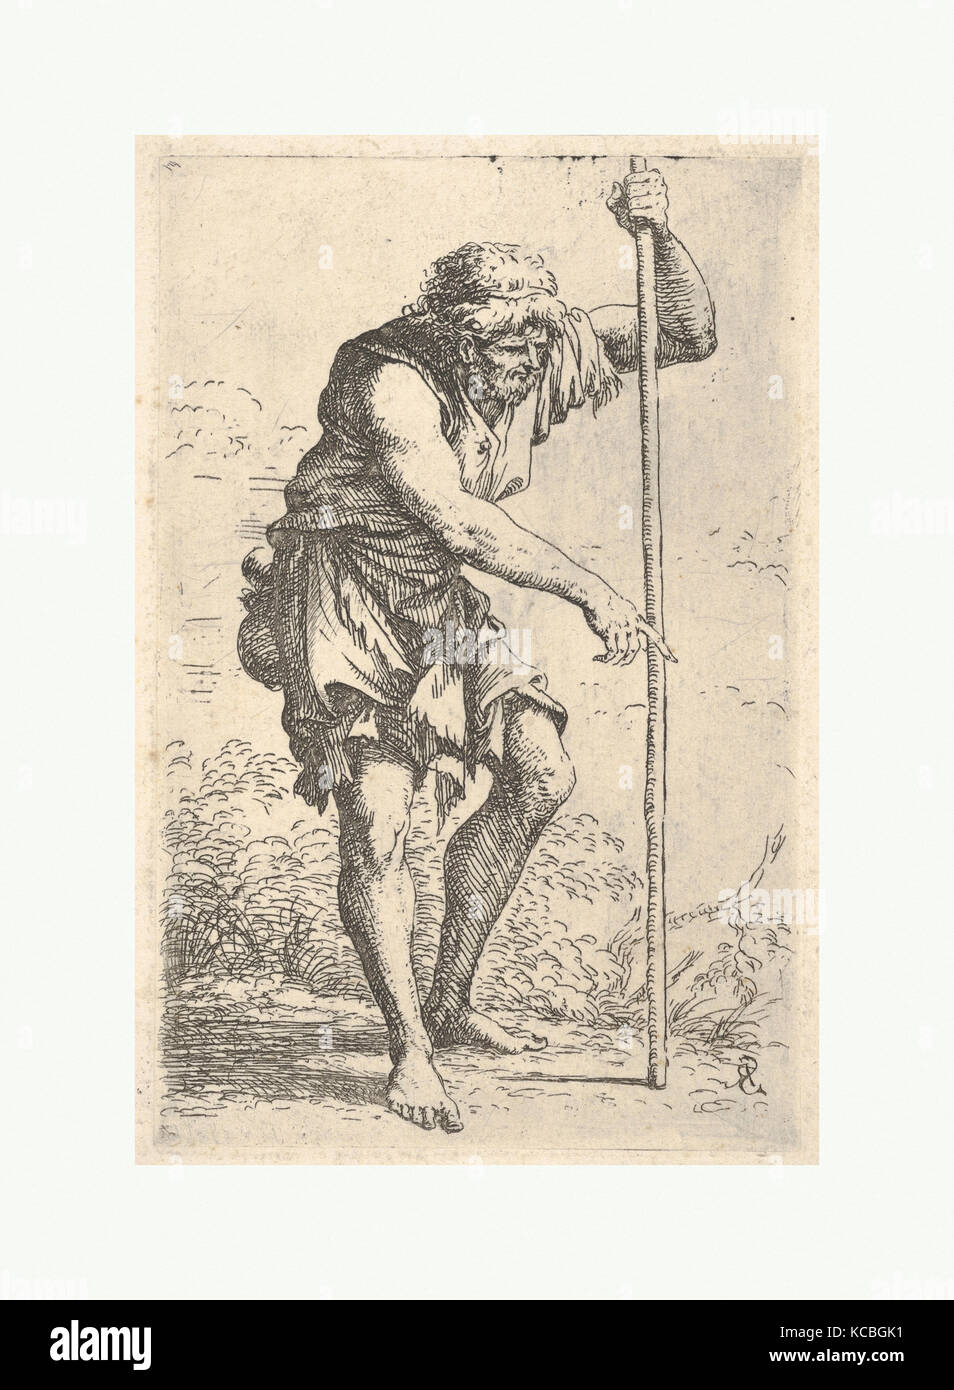 Un vieil homme en haillons, avec une calebasse sur sa hanche à marcher avec un membre du personnel, de la série 'Figurine', Salvator Rosa, ca. 1656-1657 Banque D'Images